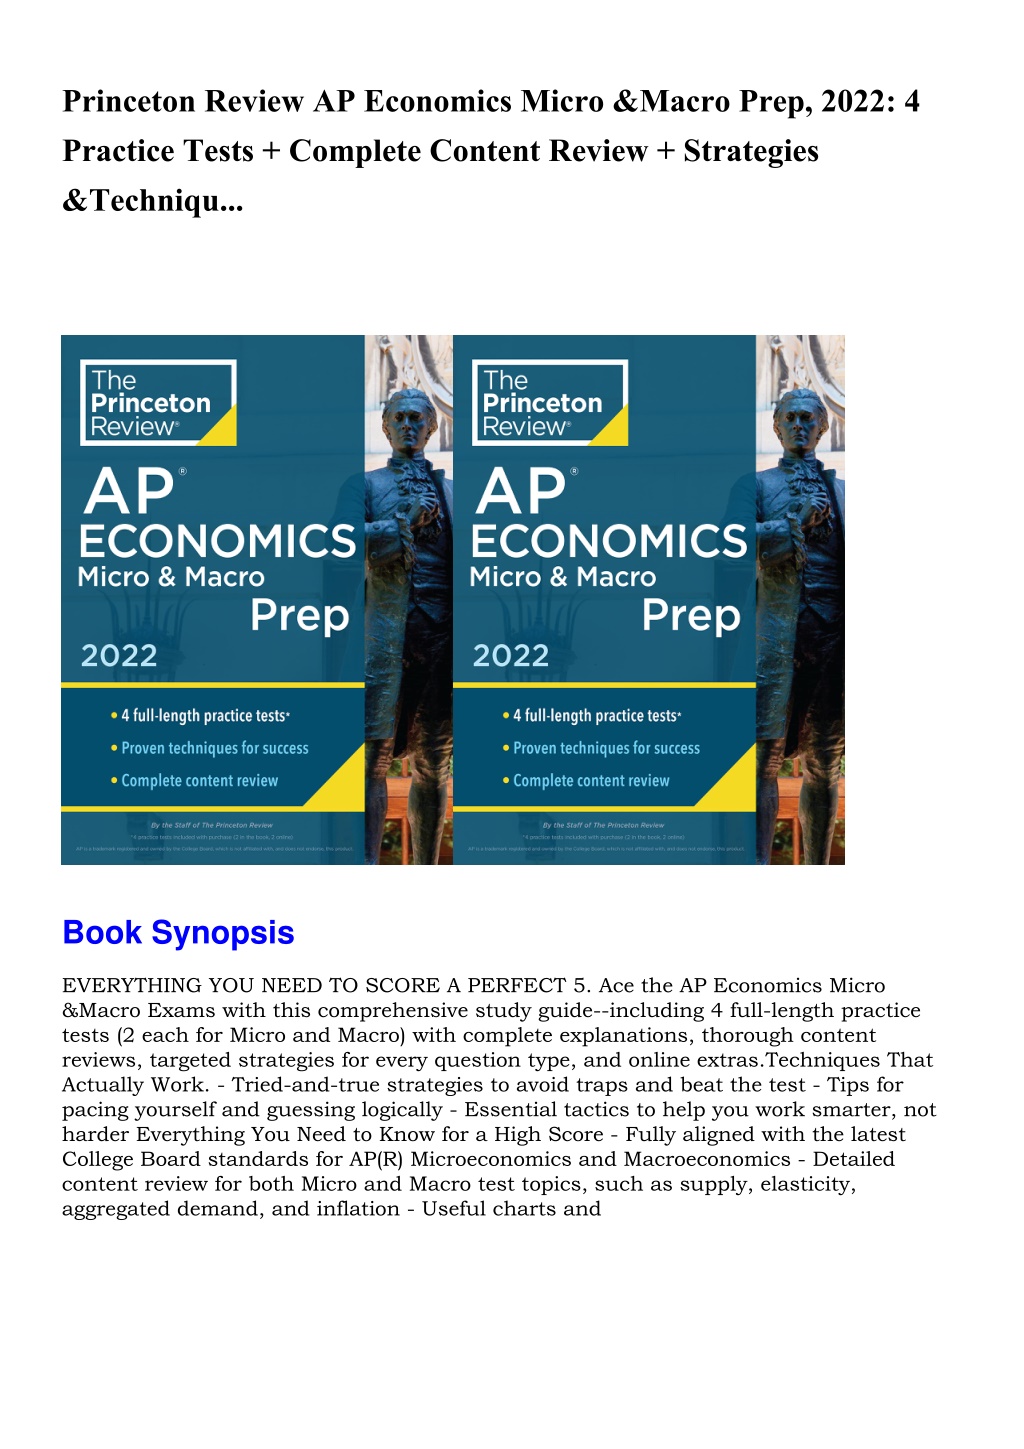 PPT DOWNLOAD Princeton Review AP Economics Micro Macro Prep 2022 4